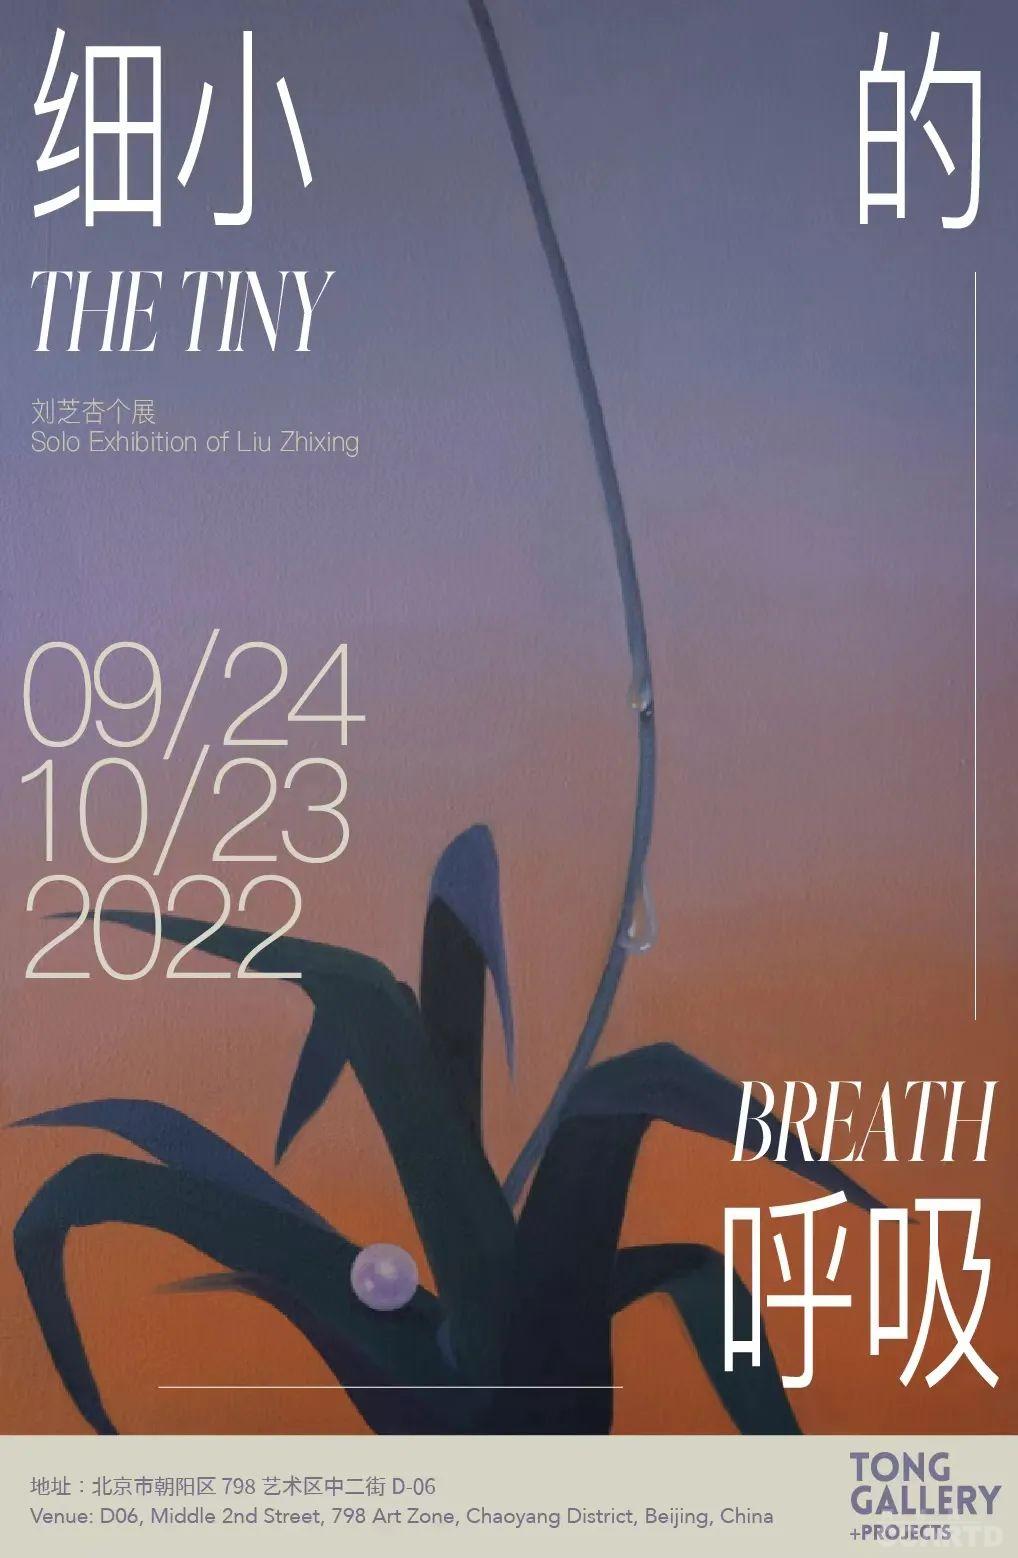 刘芝杏个展《细小的呼吸》将于9月24日开幕